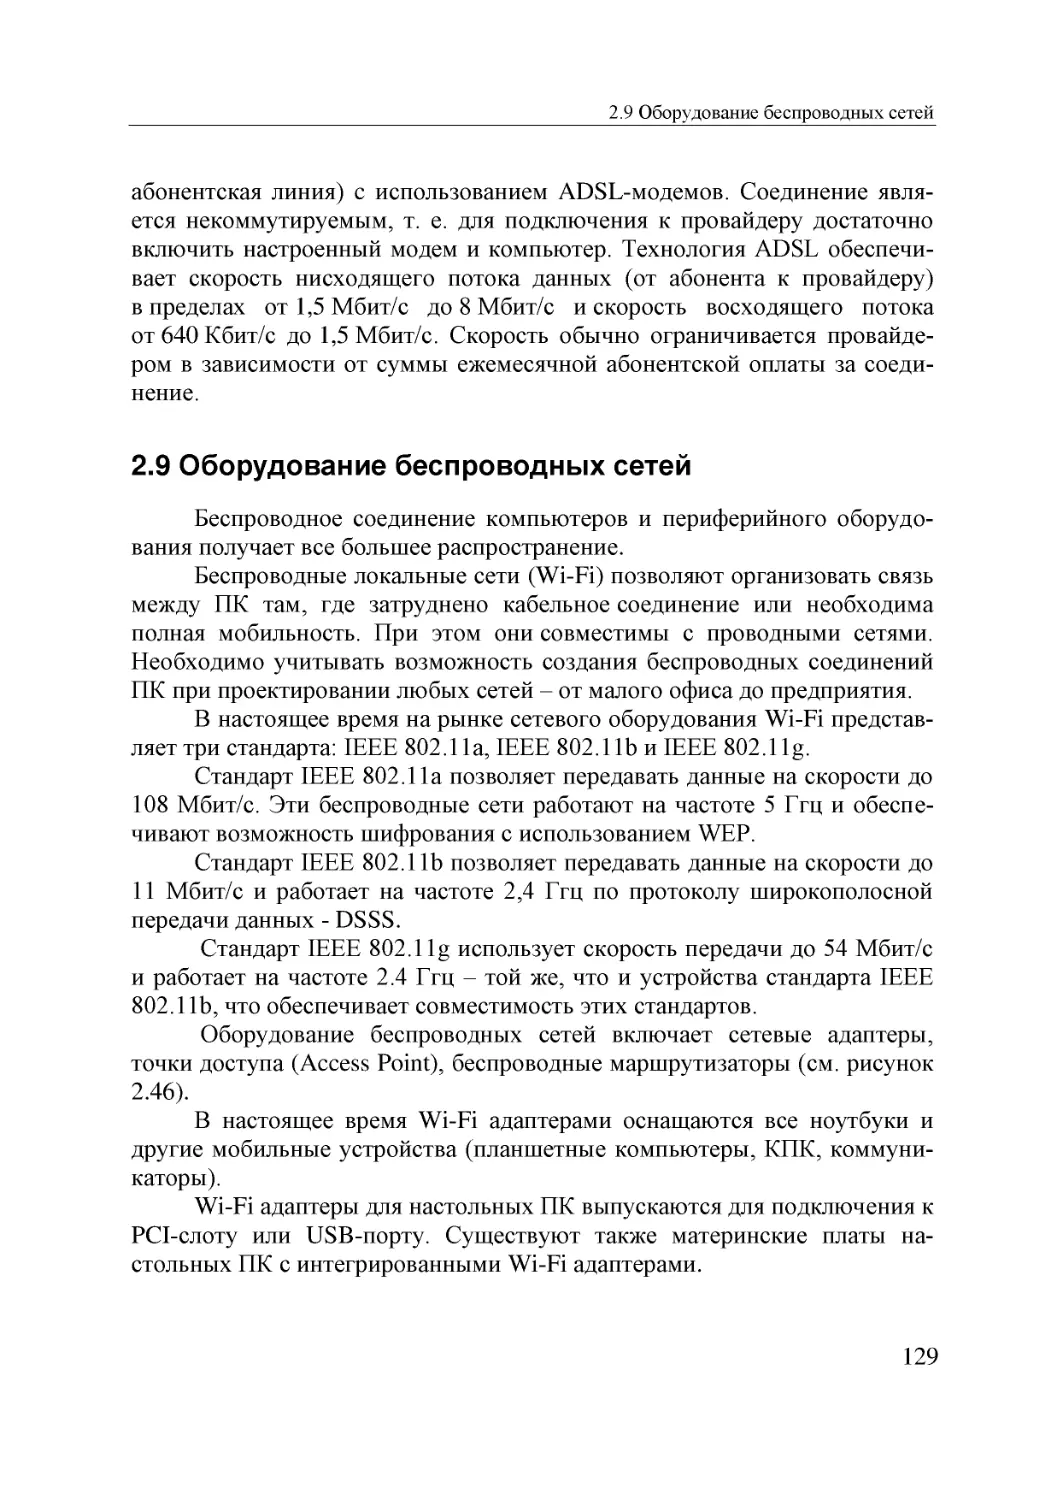 Informatika_Uchebnik_dlya_vuzov_2010 129